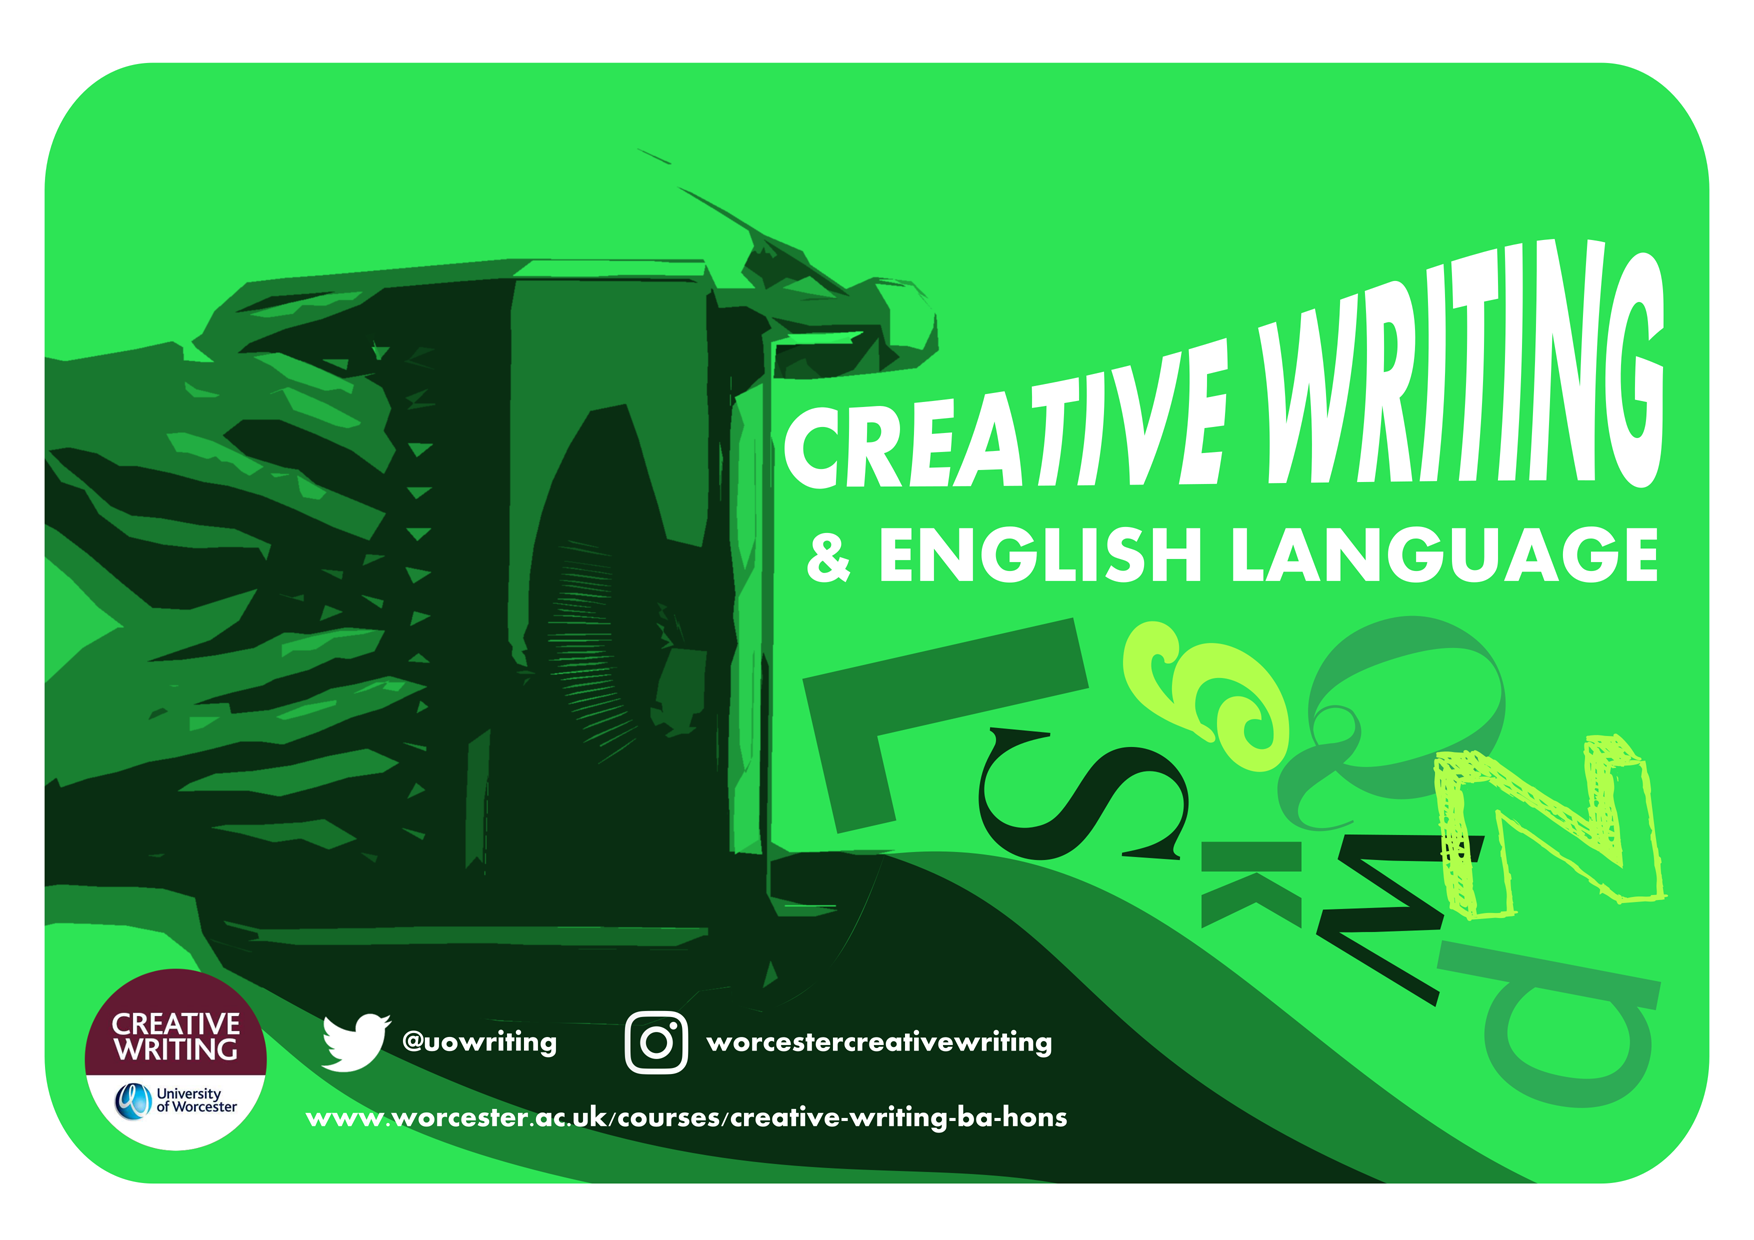 language in creative writing pdf